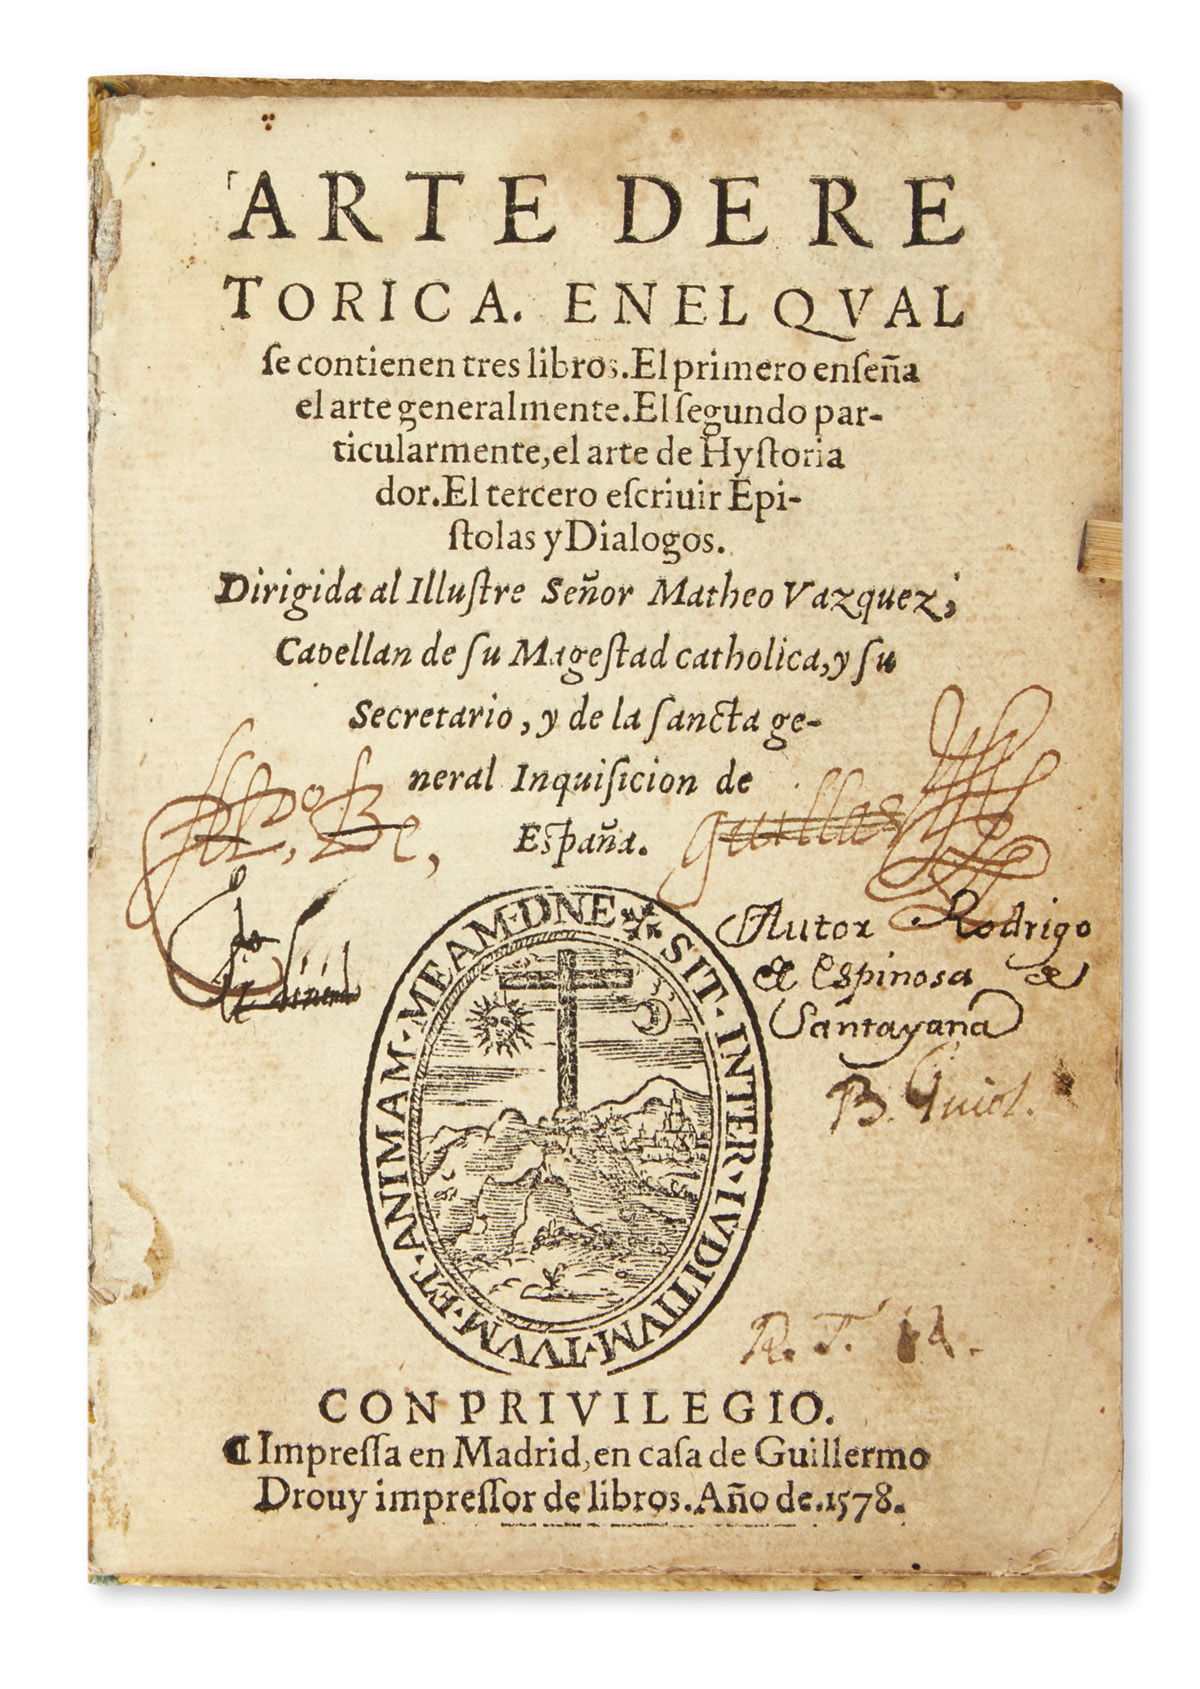 ESPINOSA DE SANTAYANA, RODRIGO DE.  Arte de Retórica.  1578